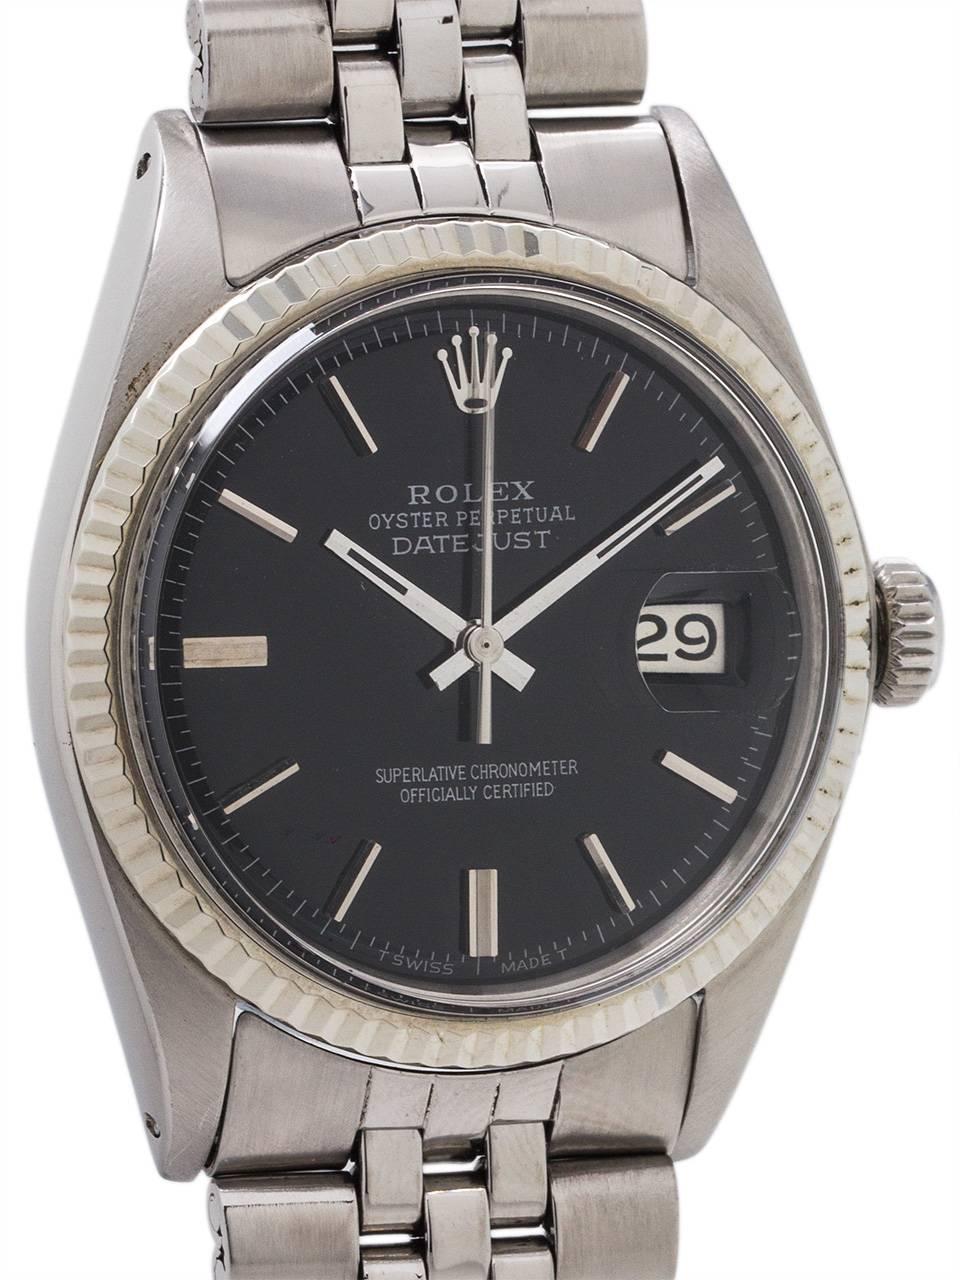 Modern Rolex White Gold Datejust Black Pie Pan Dial Wristwatch Ref 1601, circa 1970